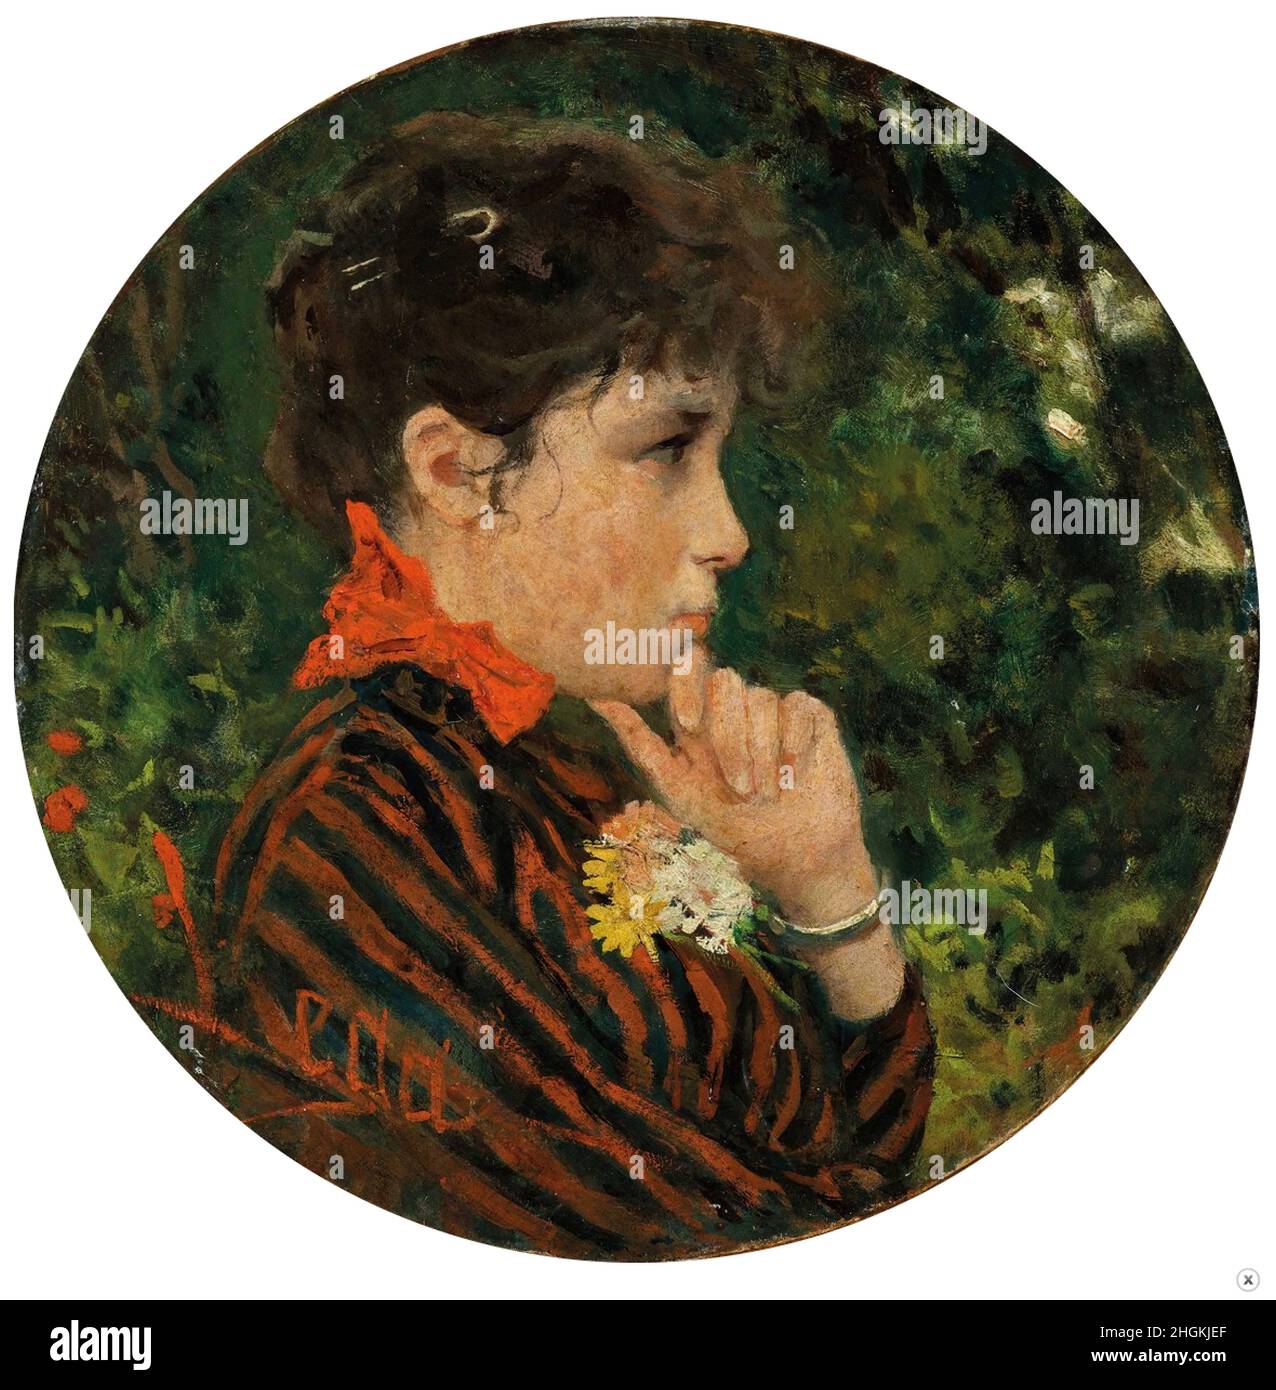 Lega Silvestro - Private Collection - Profilo di donna - 1883c. - olio su pergamena, diametro 27 cm - Stock Photo